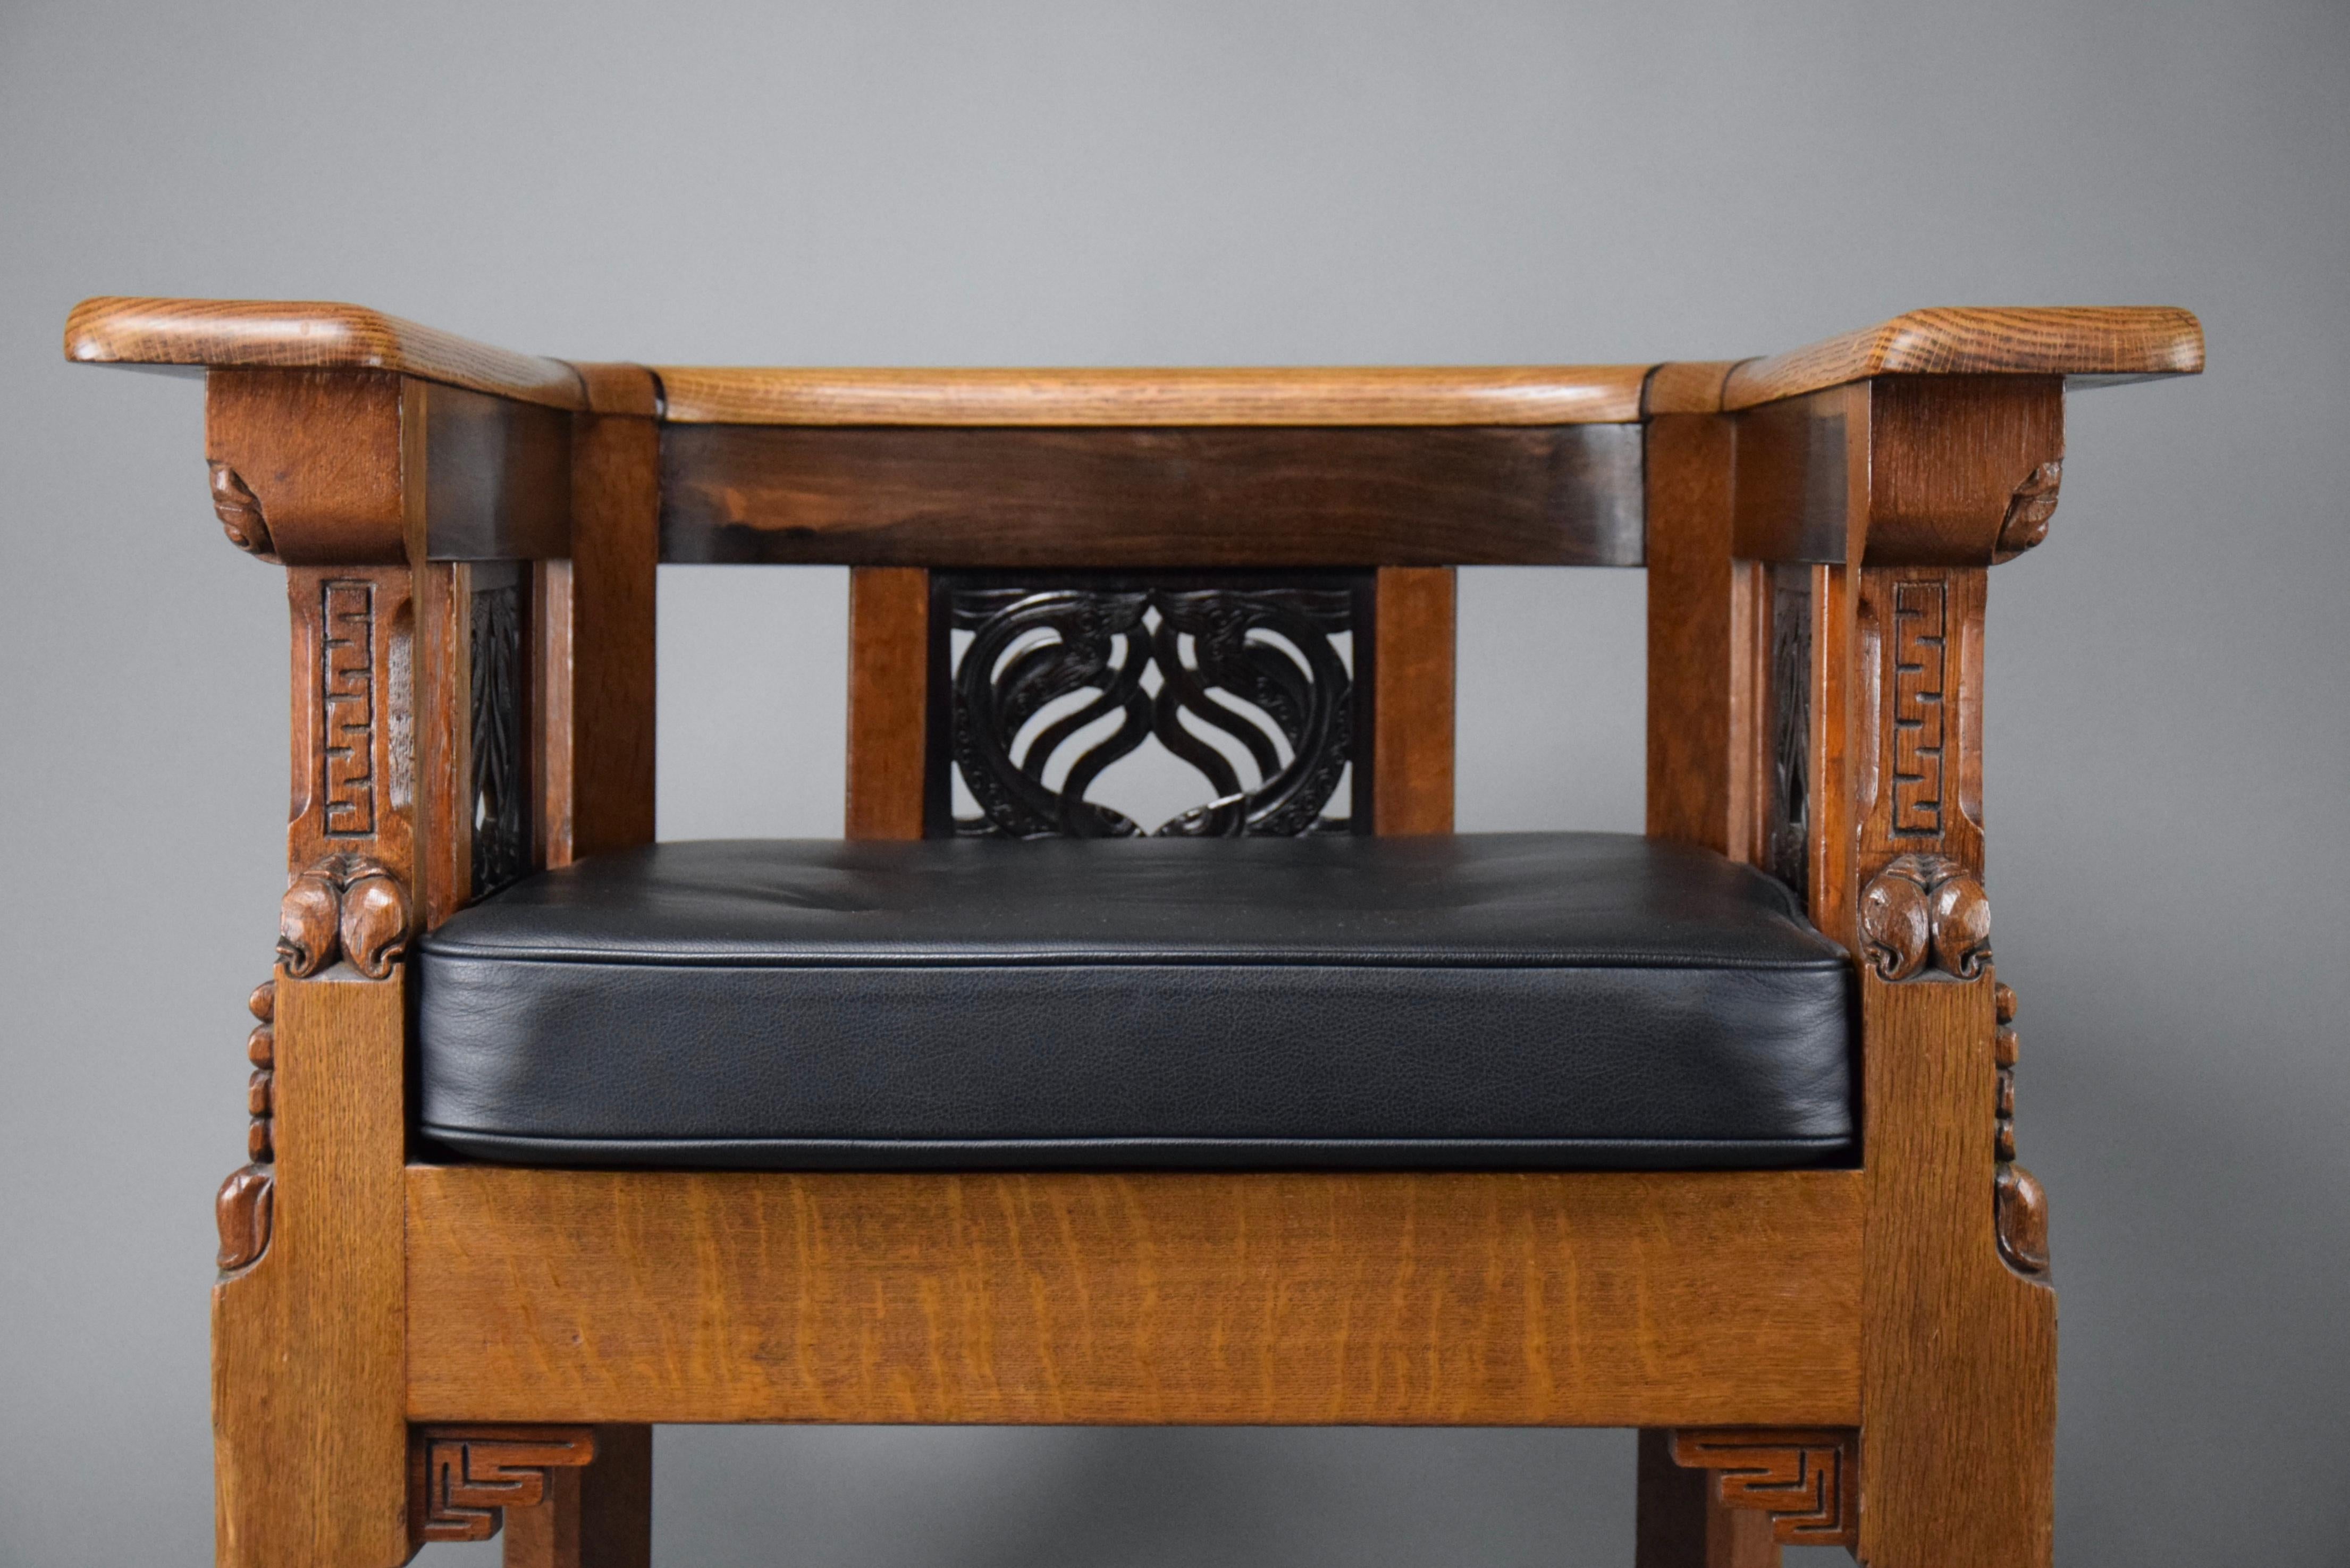 Ein Meisterwerk der Eleganz des Art déco: Der einzigartige, handgefertigte Lion Cachet Sessel aus Eichen- und Jatoba-Holz!

Lassen Sie sich von einem wahren Kunstwerk verzaubern, das mehr ist als nur ein Möbelstück. Dieser handgefertigte Sessel aus